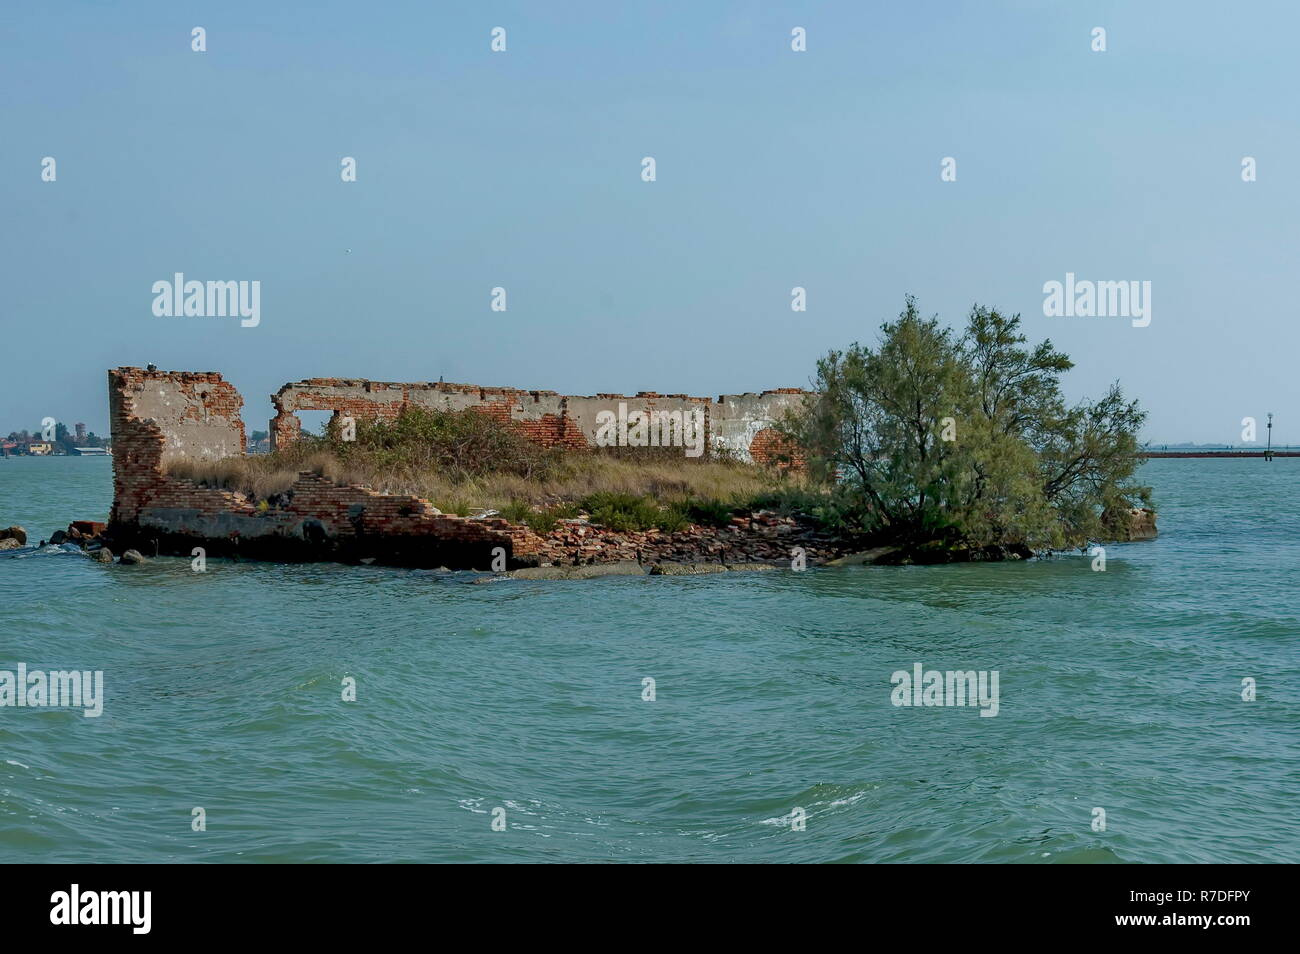 Isola abbandonata nella laguna veneziana, Italia Foto Stock